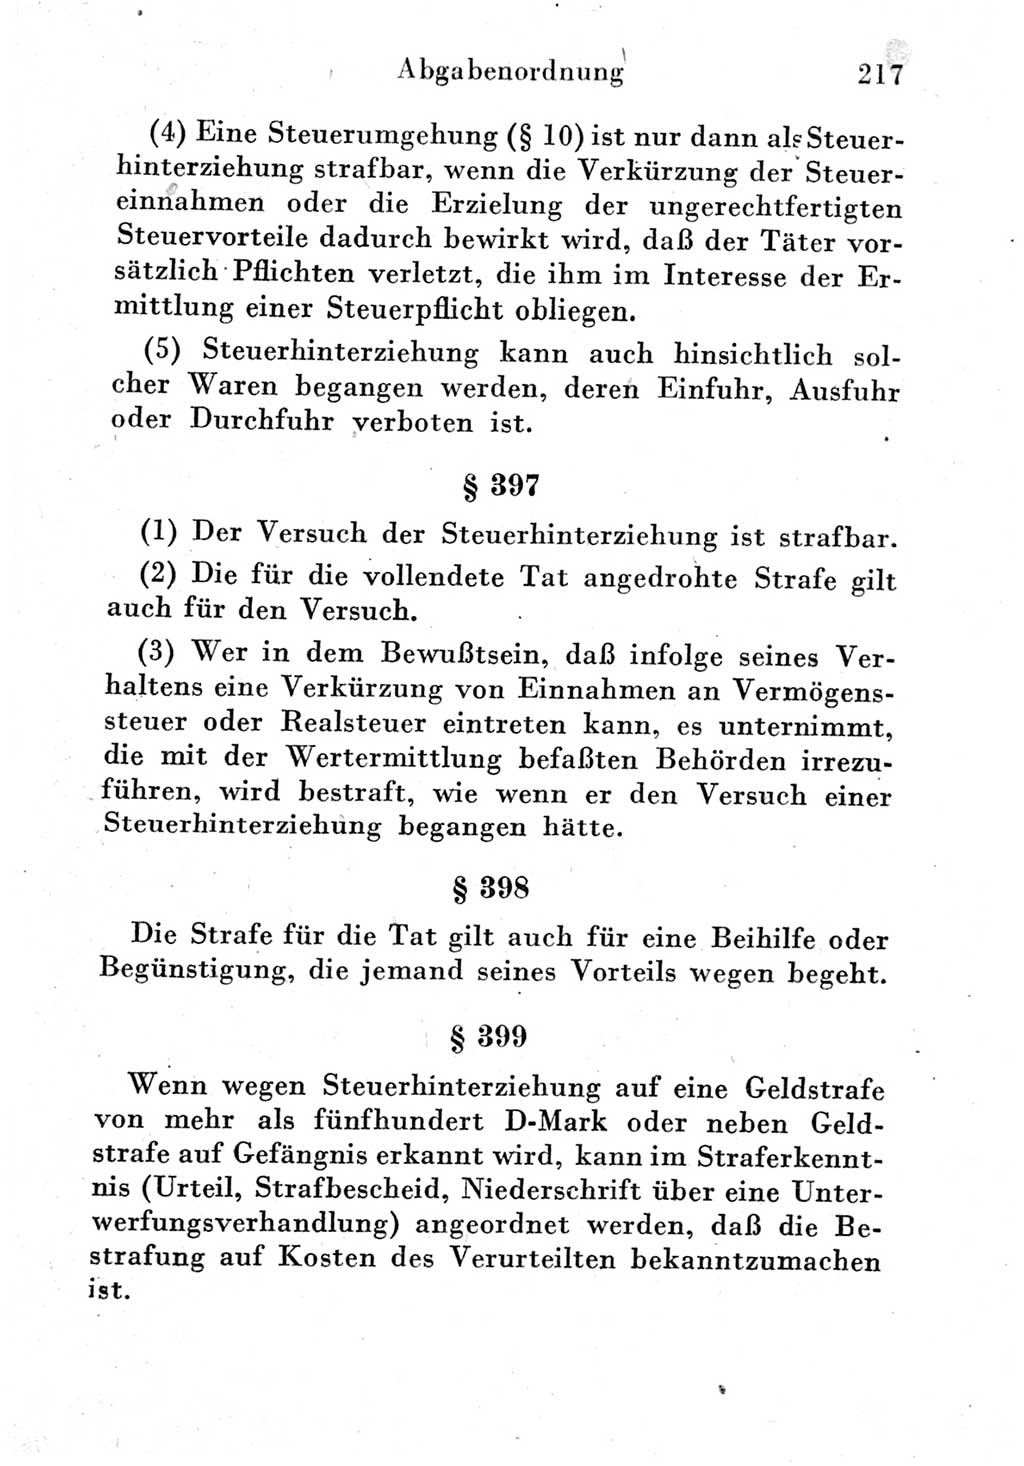 Strafgesetzbuch (StGB) und andere Strafgesetze [Deutsche Demokratische Republik (DDR)] 1951, Seite 217 (StGB Strafges. DDR 1951, S. 217)